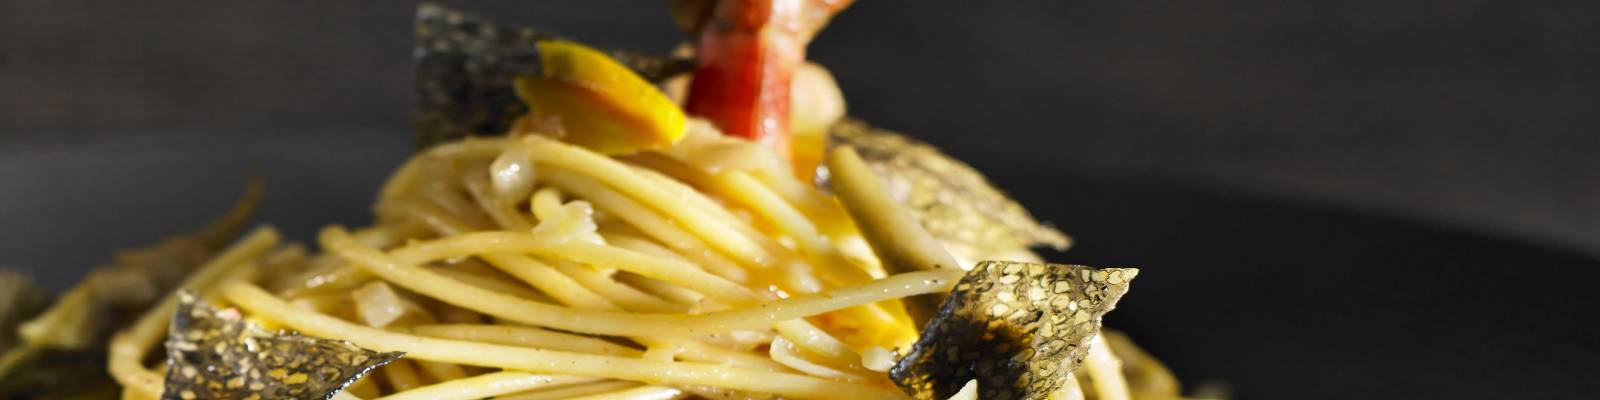 Pasta Garofalo - Spaghetti Garofalo, räkor och kaviarflingor